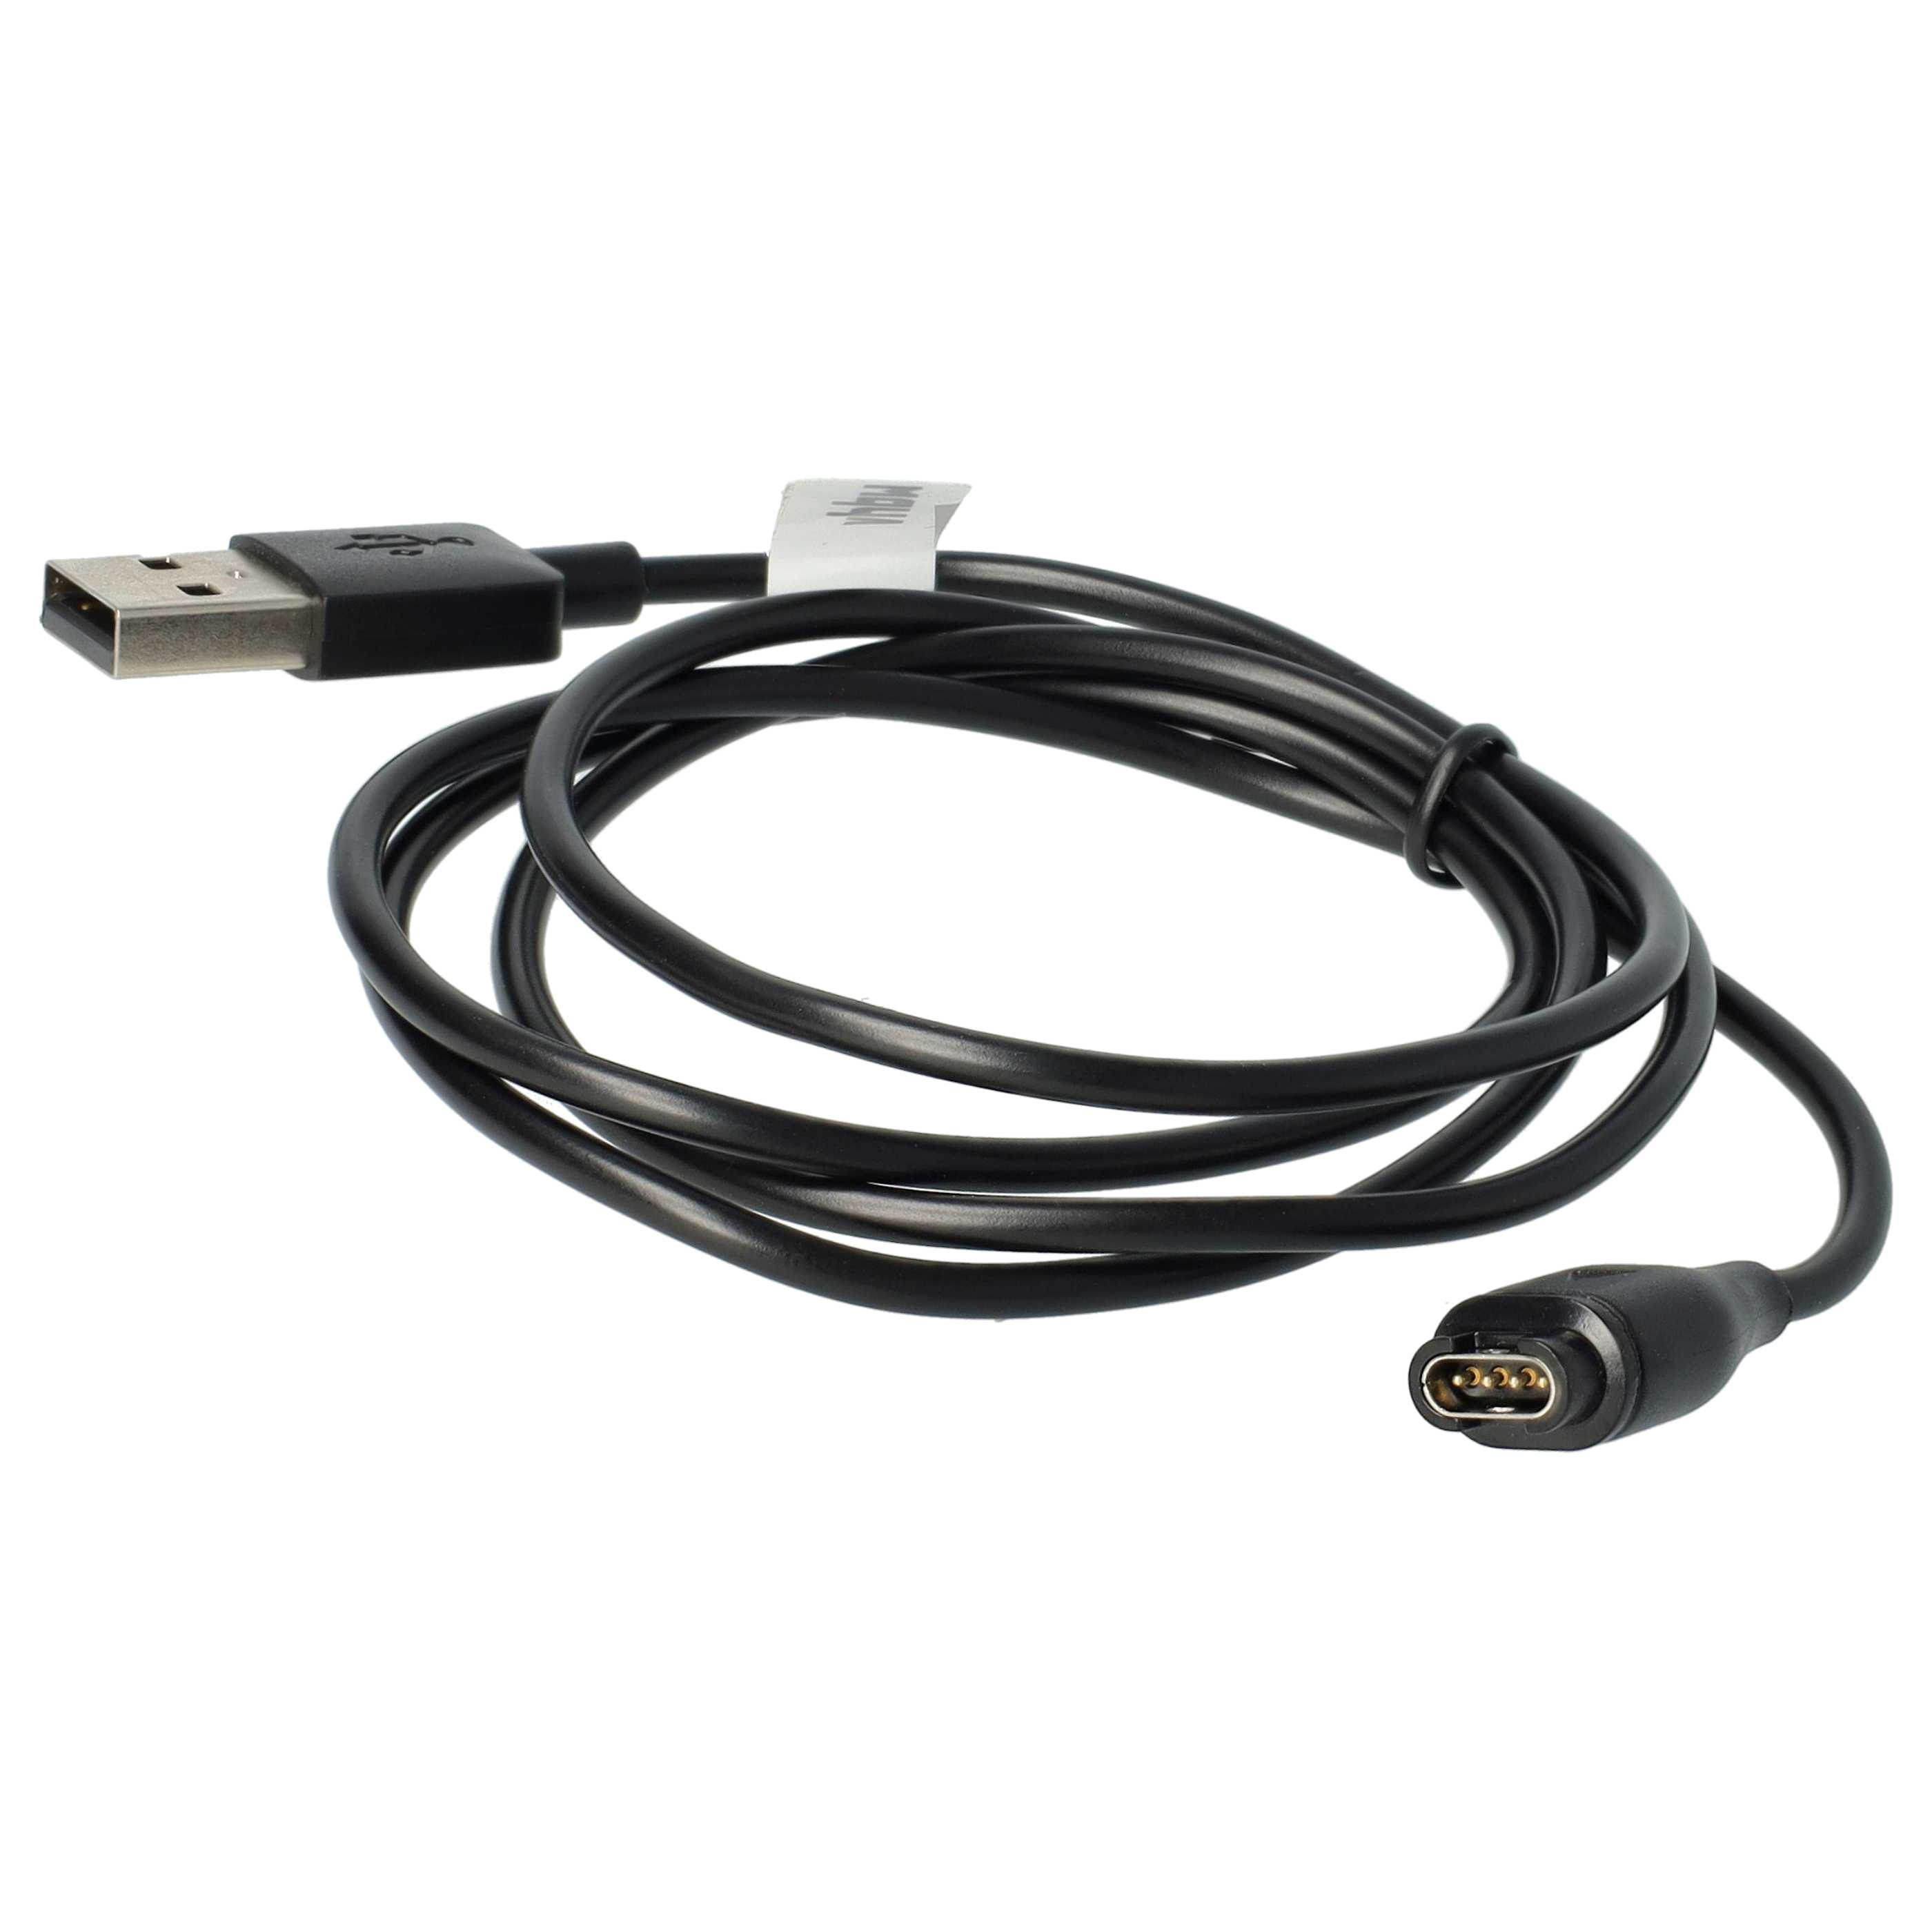 Kabel do ładowania smartwatch Garmin zamiennik Garmin 8013048 - Kabel USB A, 100 cm, czarny